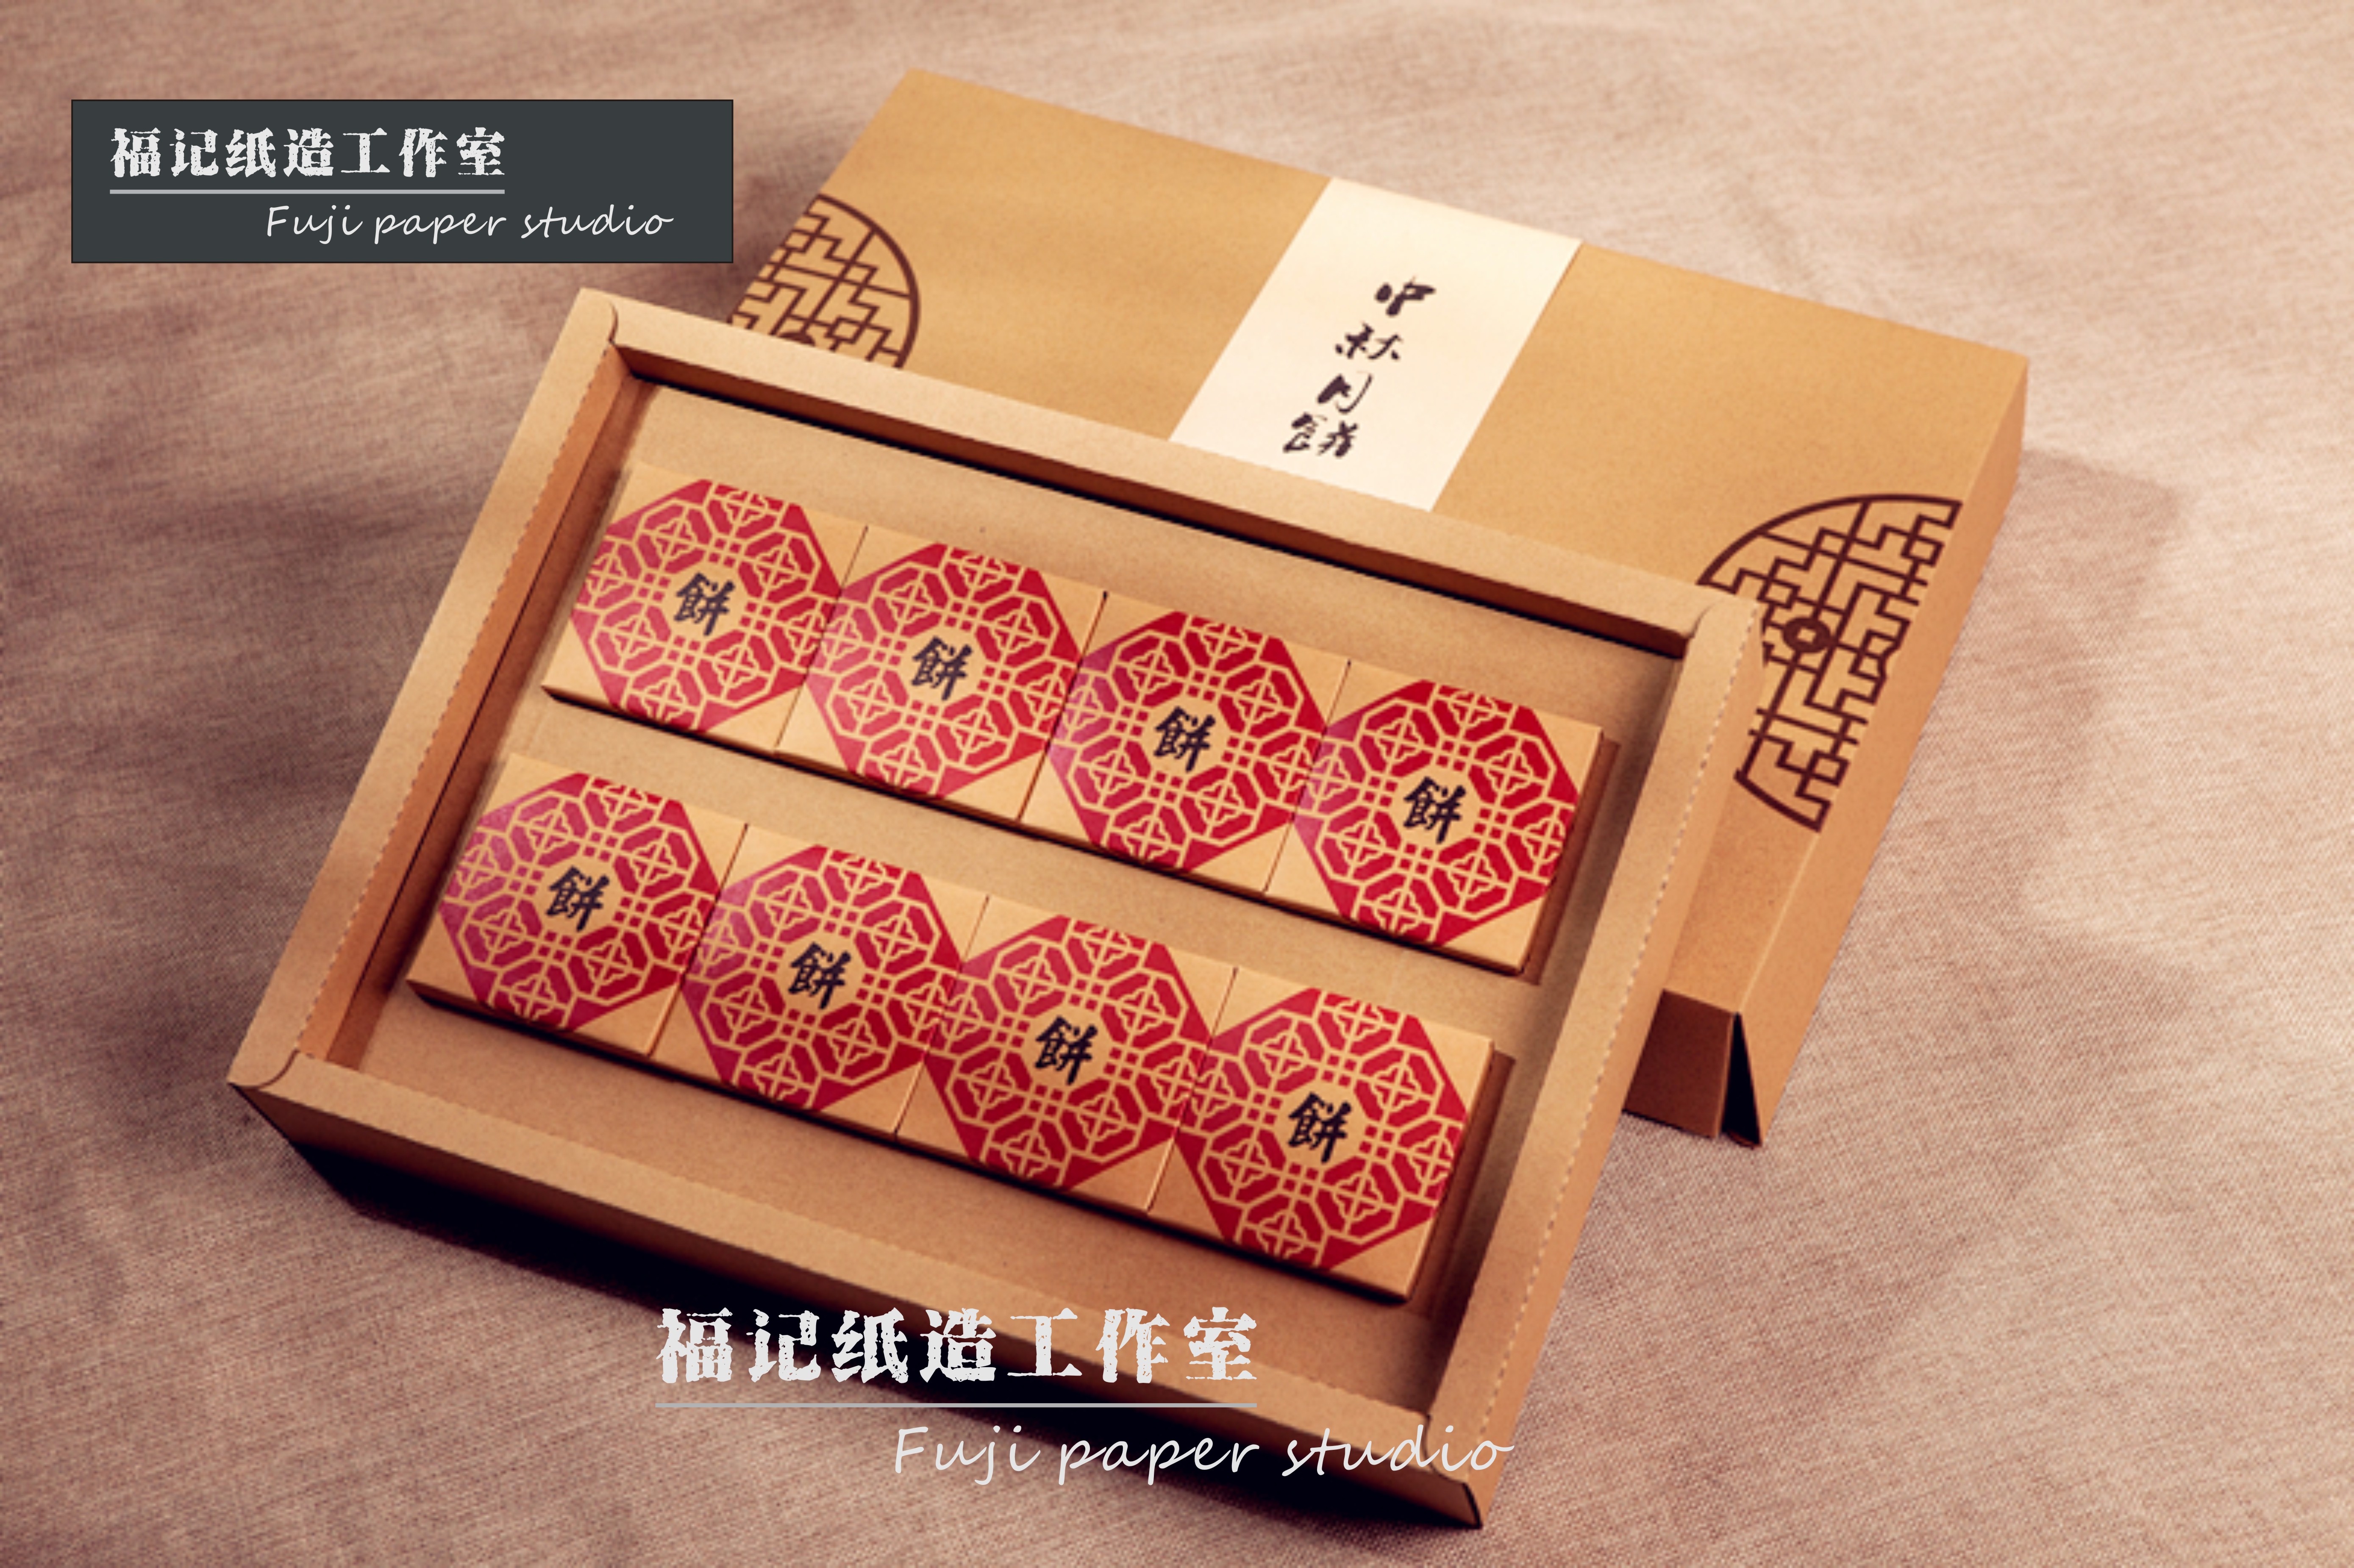 定做高档礼品盒月饼盒包装盒水果硬盒印刷酒盒土特产茶叶盒定制